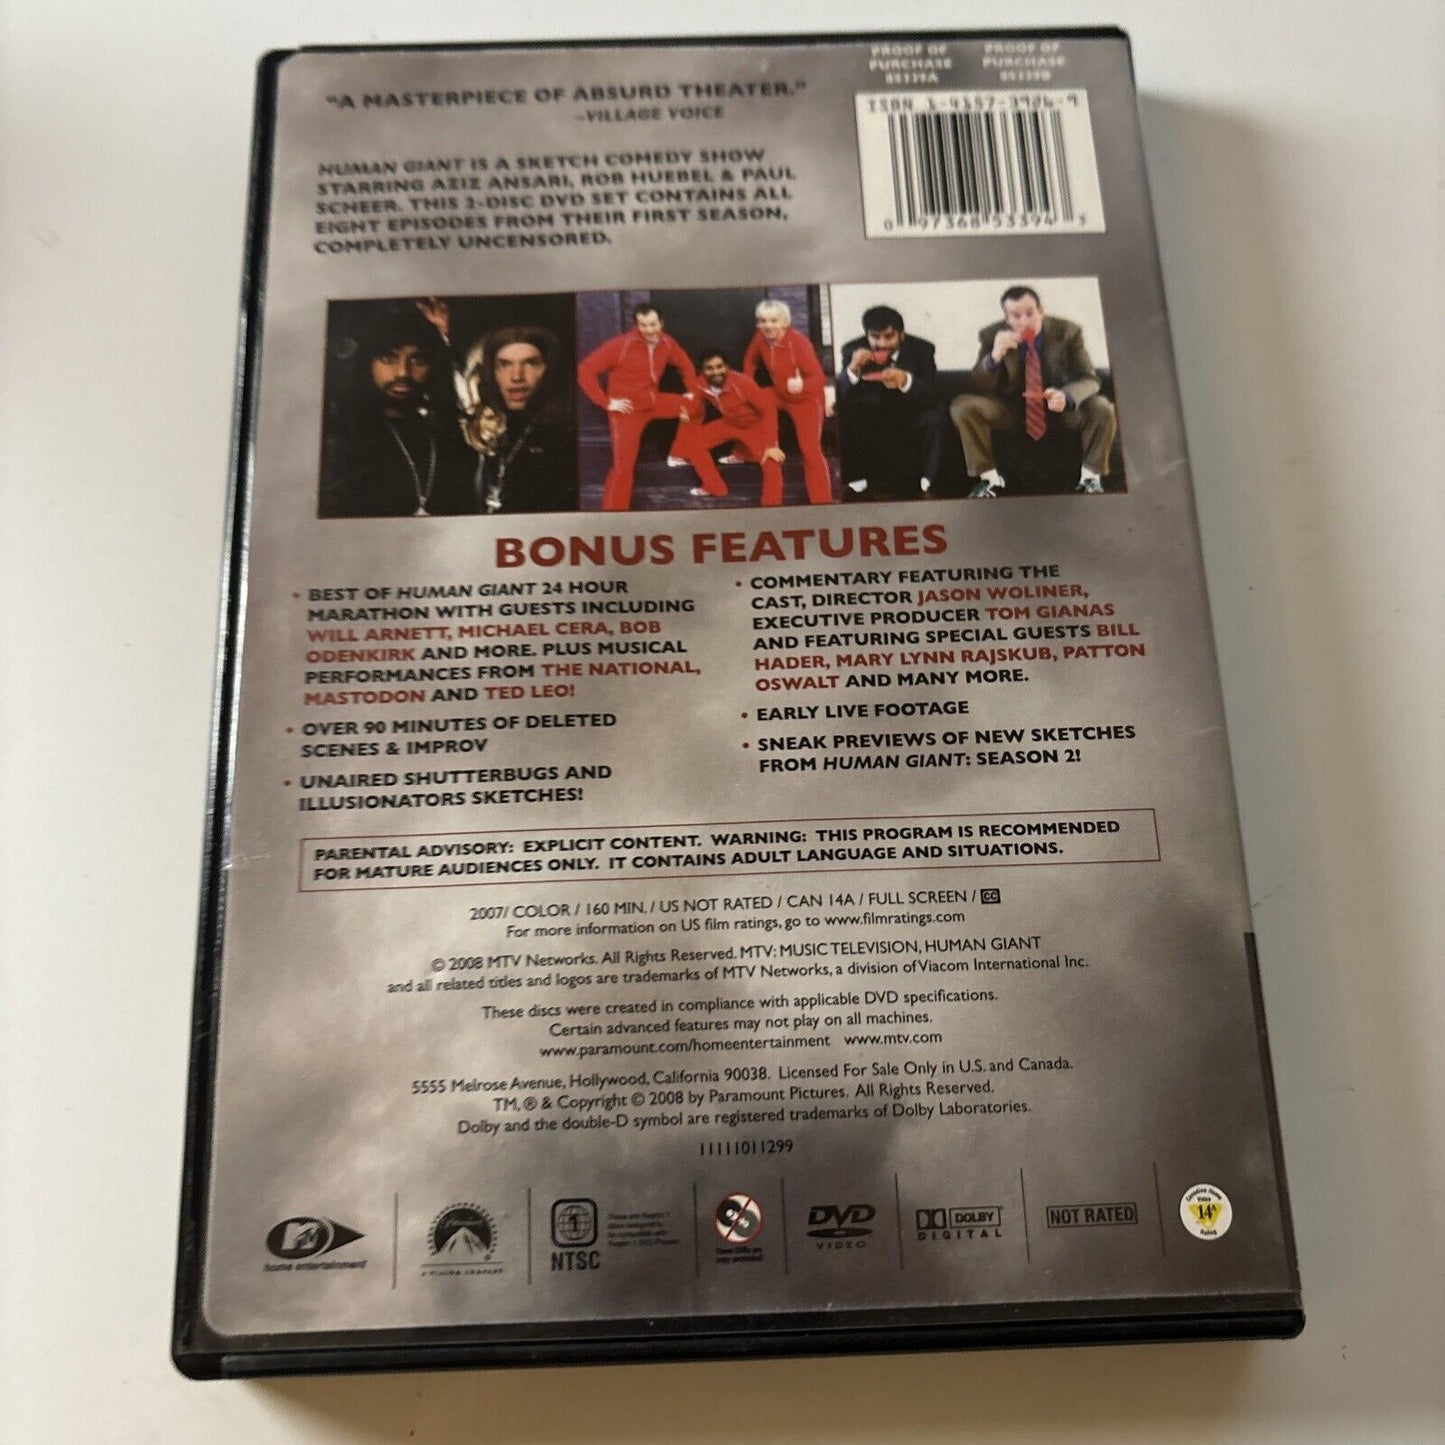 Human Giant - Season 1 (DVD, 2008, 2-Disc) PAUL SCHEER, AZIZ ANSARI Region 1